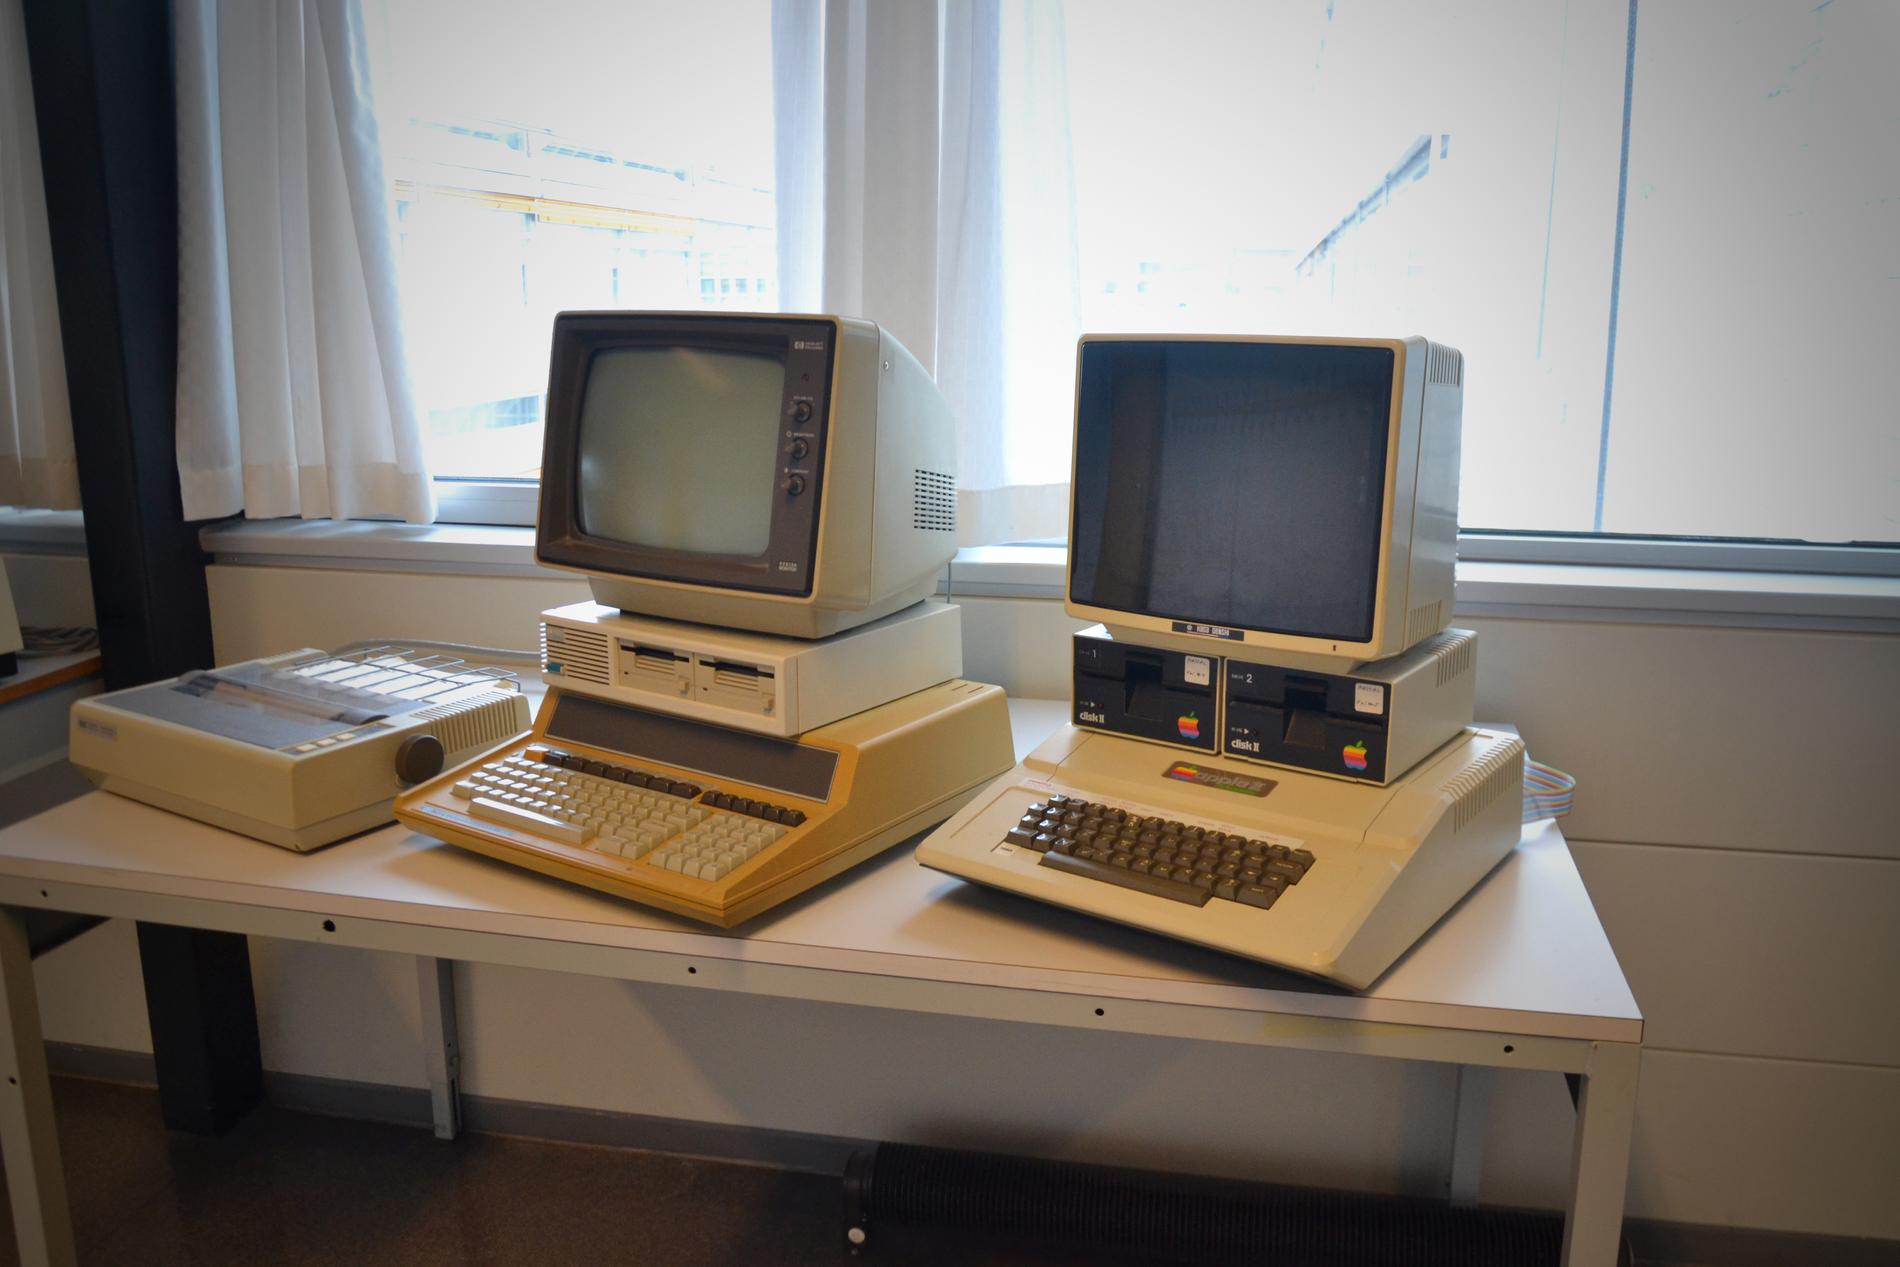 En rekke eldre PCer blir en sjarmerende kontrast til dagens robotteknologi.